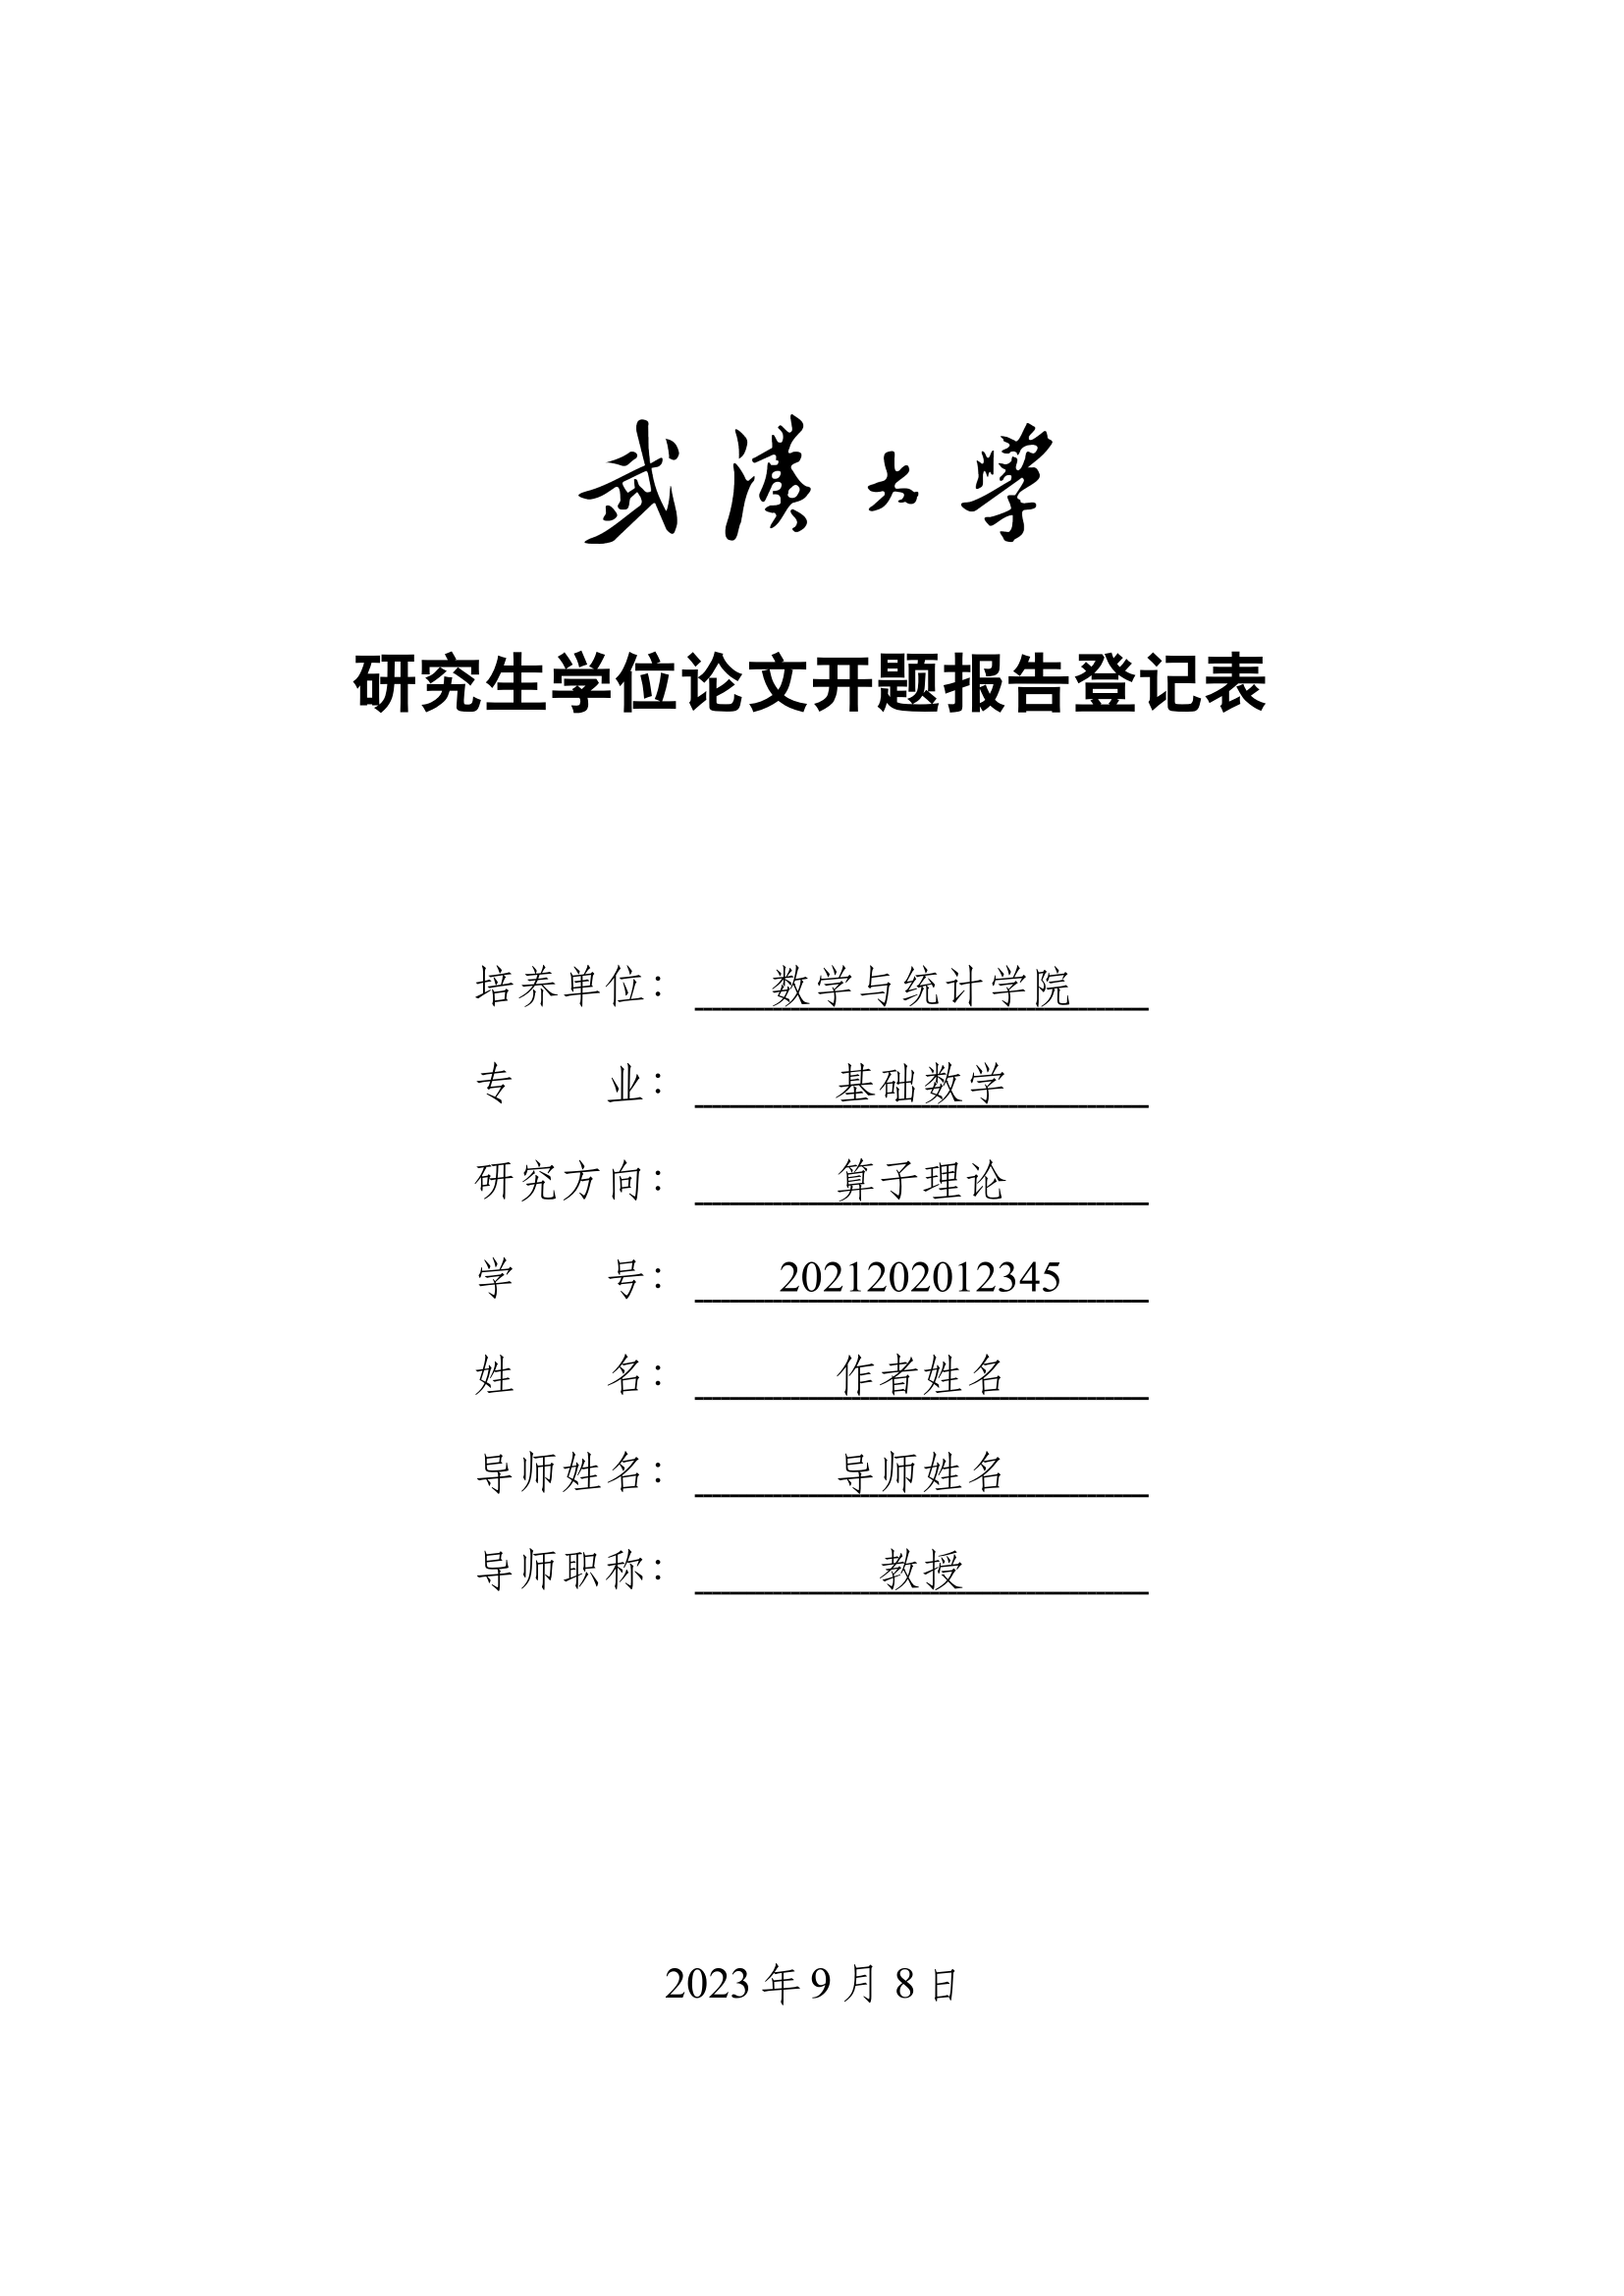 武汉大学研究生学位论文开题报告登记表 v0.7